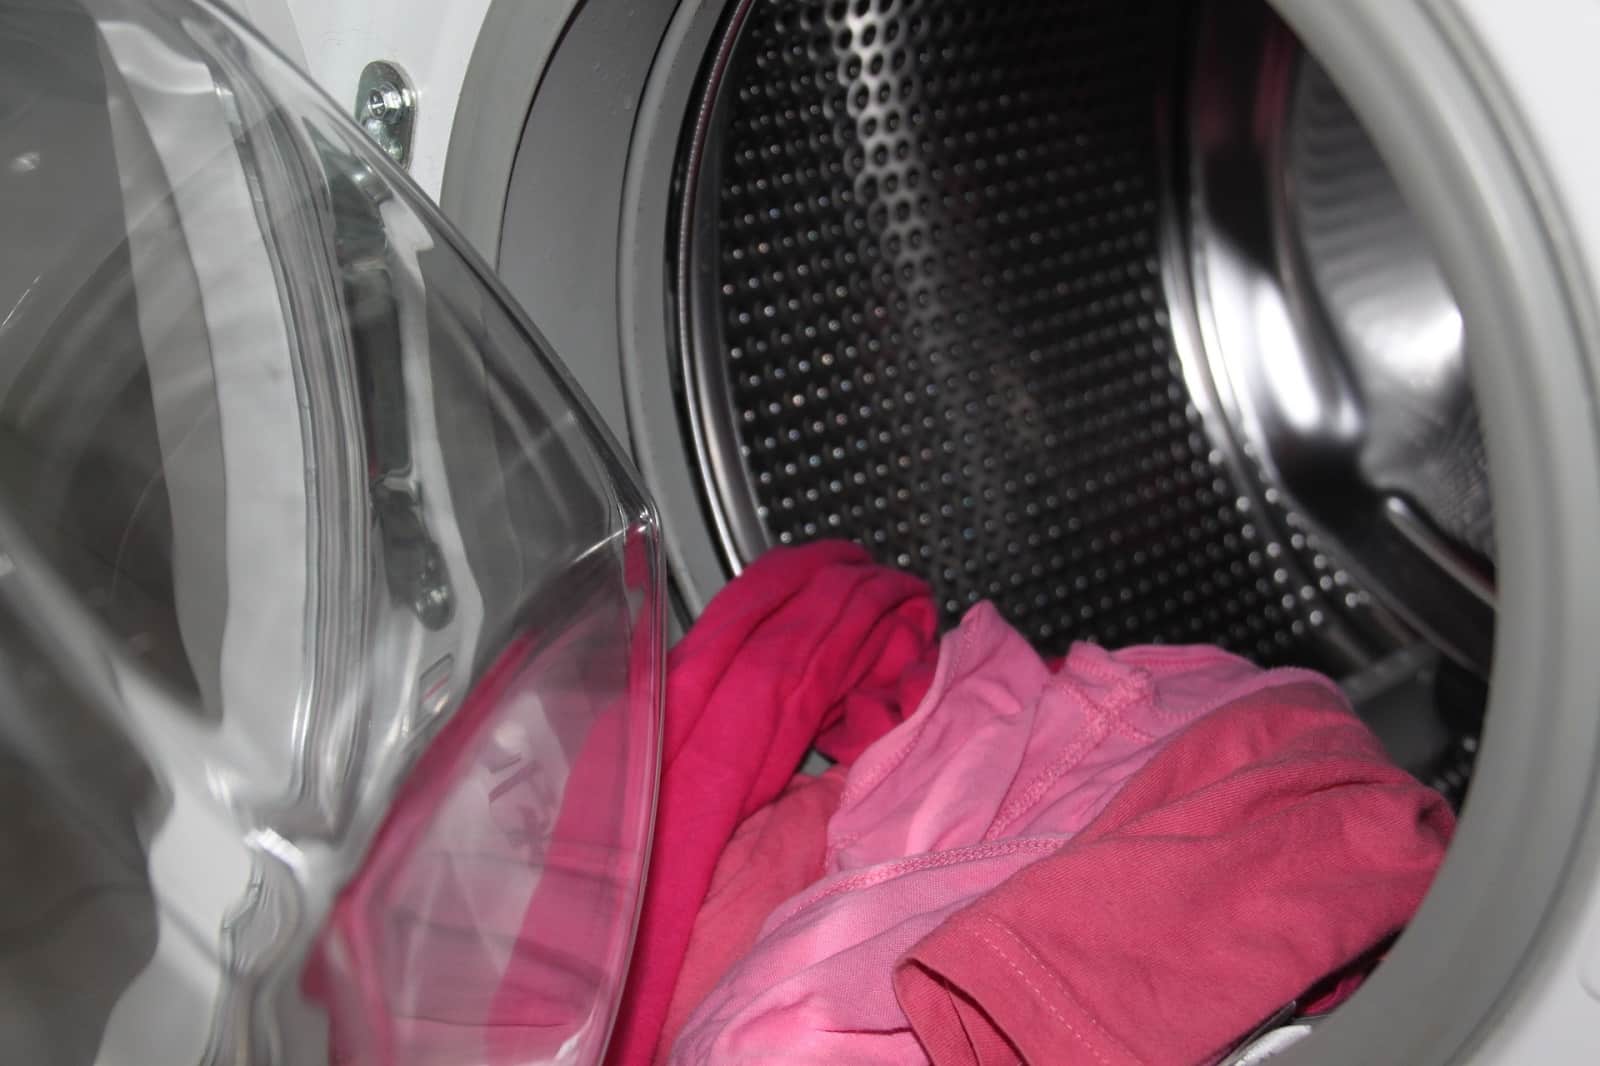 Jabón en polvo: los errores más comunes al usarlo y cómo evitar dañar la ropa